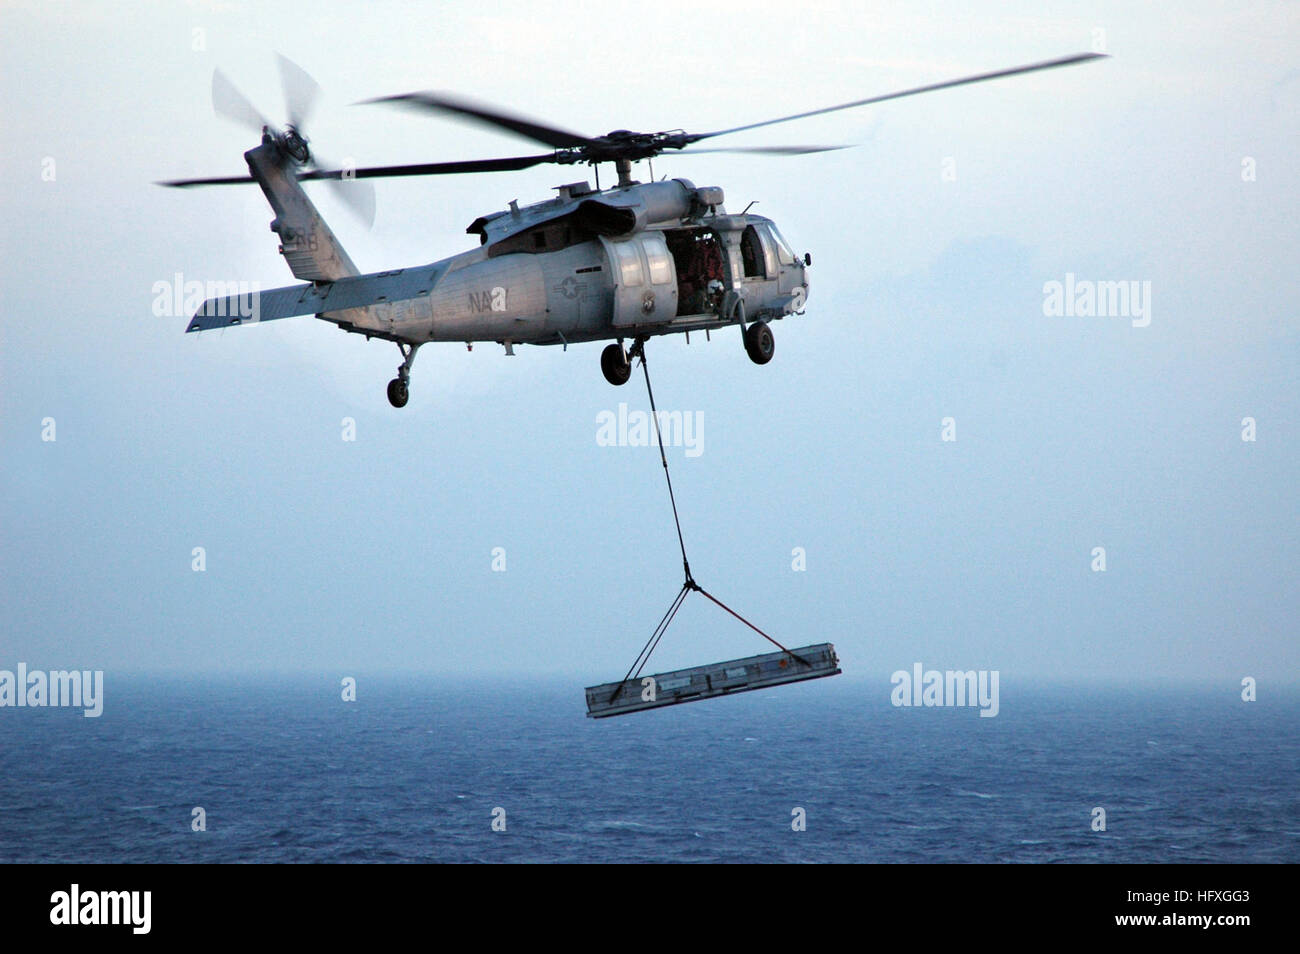 051129-N-6106R-027 Pazifik (29. November 2005) Ð ein MH-60 Seahawk Hubschrauber Transporte Lieferungen von der Military Sealift Command (MSC) Munition Schiff USNS Flint (T-AE-32) auf dem konventionell angetriebenen Flugzeugträger USS Kitty Hawk (CV-63) während einer vertikalen Nachschub. Kitty Hawk und eingeschifften Carrier Air Wing Five (CVW-5) sind derzeit Durchführung von Operationen im westlichen Pazifischen Ozean. Foto: U.S. Navy des Fotografen Mate Airman Stephen W. Rowe (freigegeben) US Navy 051129-N-6106R-027 ein MH-60 Seahawk Hubschrauber transportiert liefert von der Military Sealift Command (MSC) Munition Stockfoto